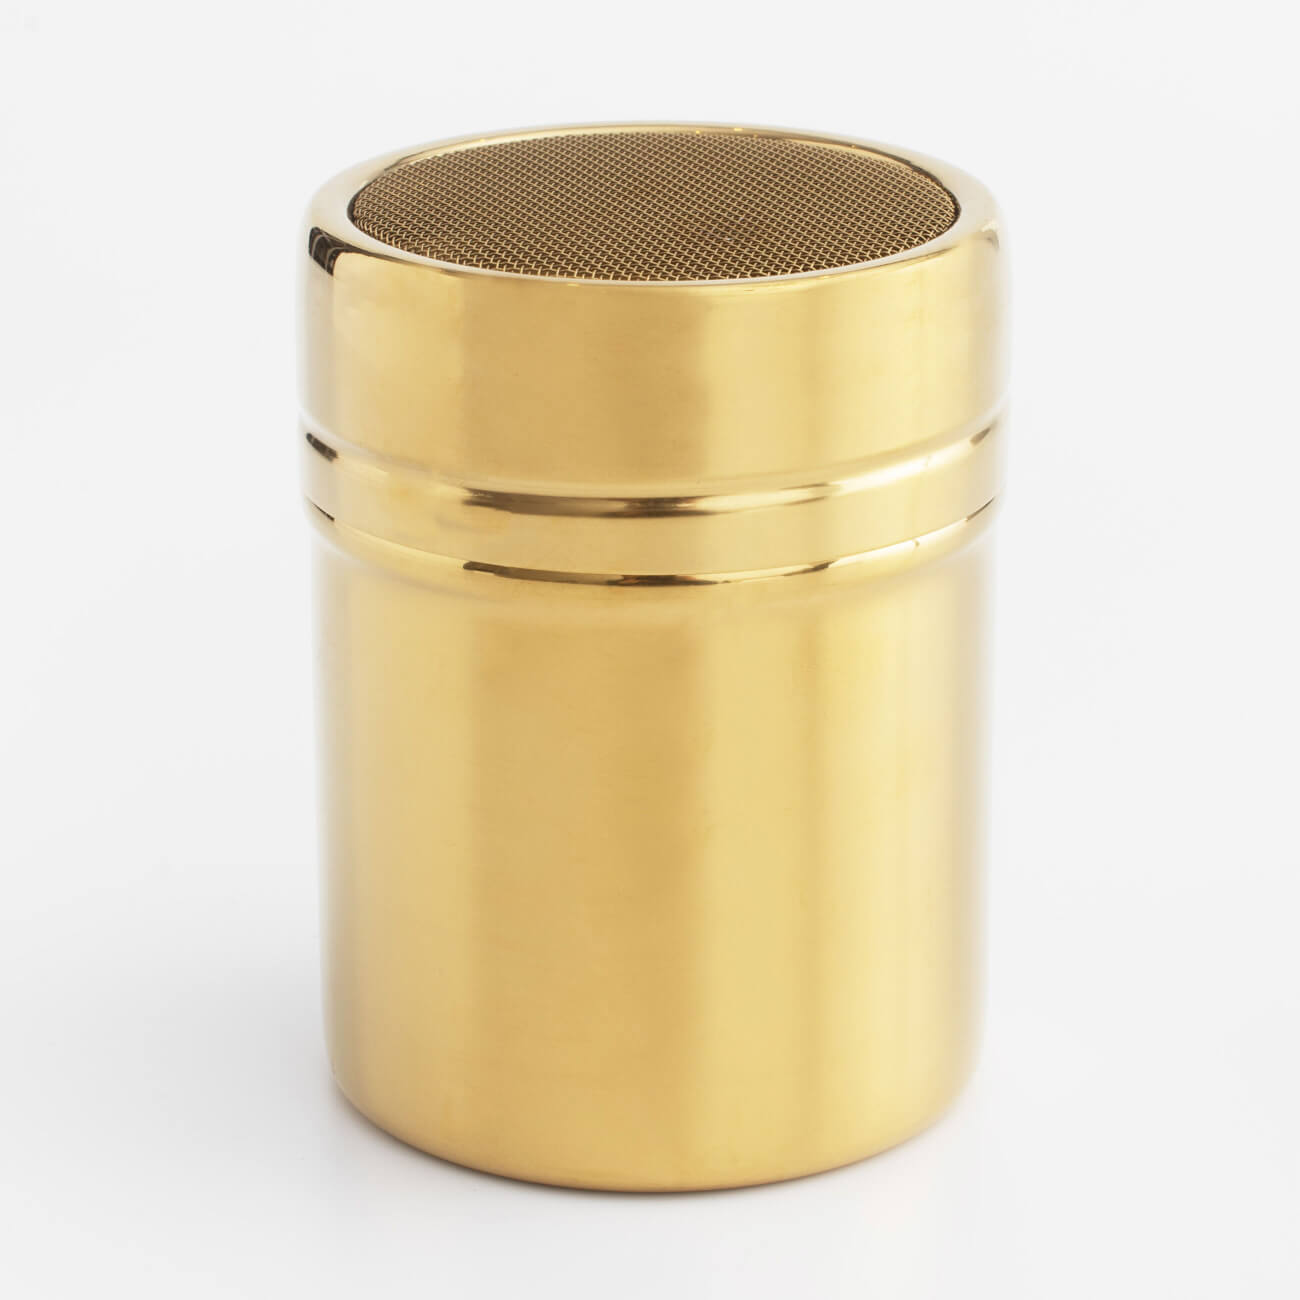 Сито-кружка, 9х7 см, с крышкой, сталь/пластик, золотистое, Classic gold кружка сито для муки nouvelle